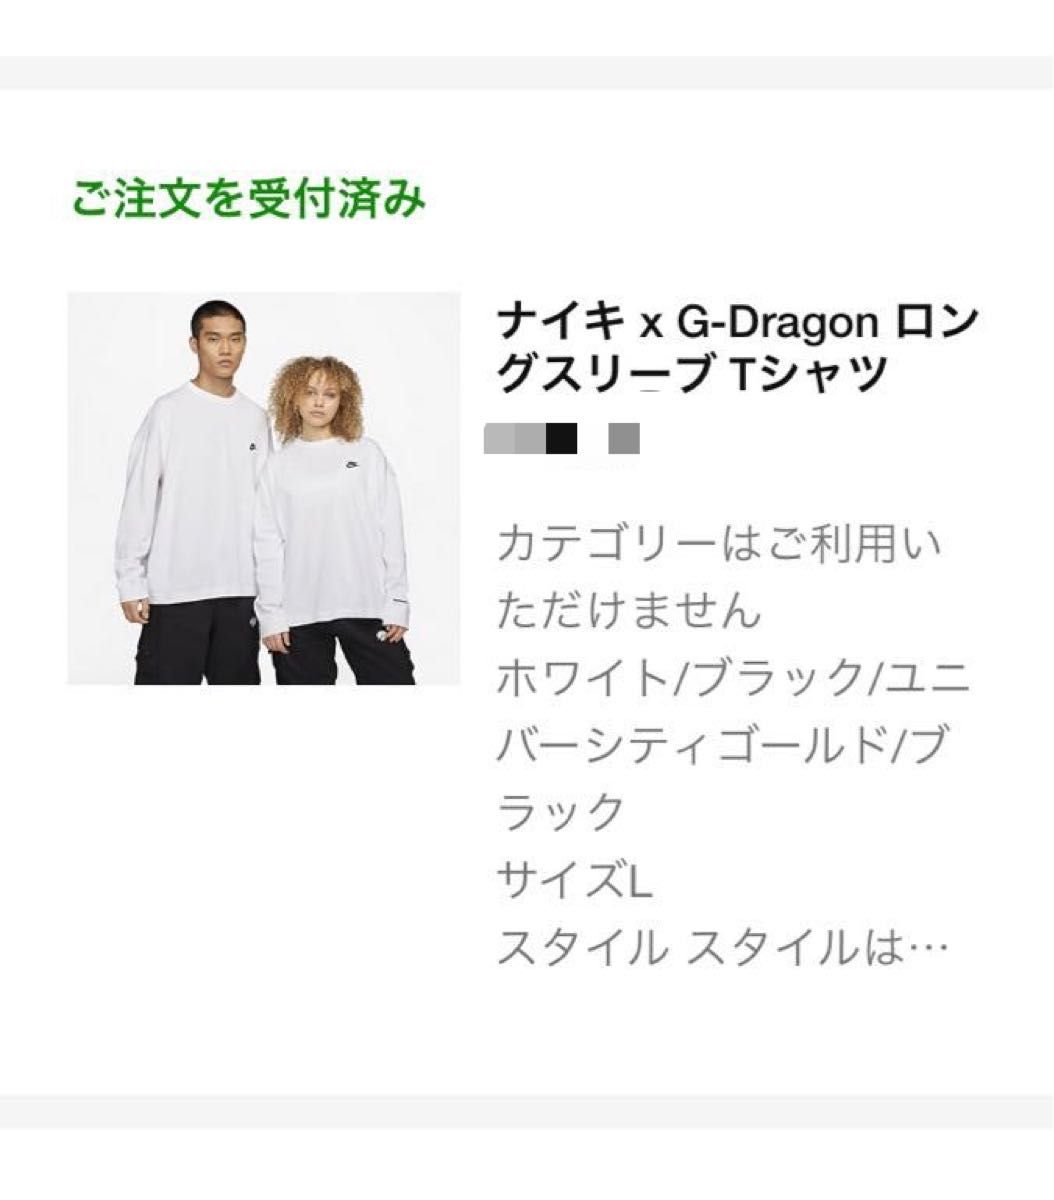 シリアルシール付 NIKE x G-Dragon ロングスリーブTシャツ白黒2色 